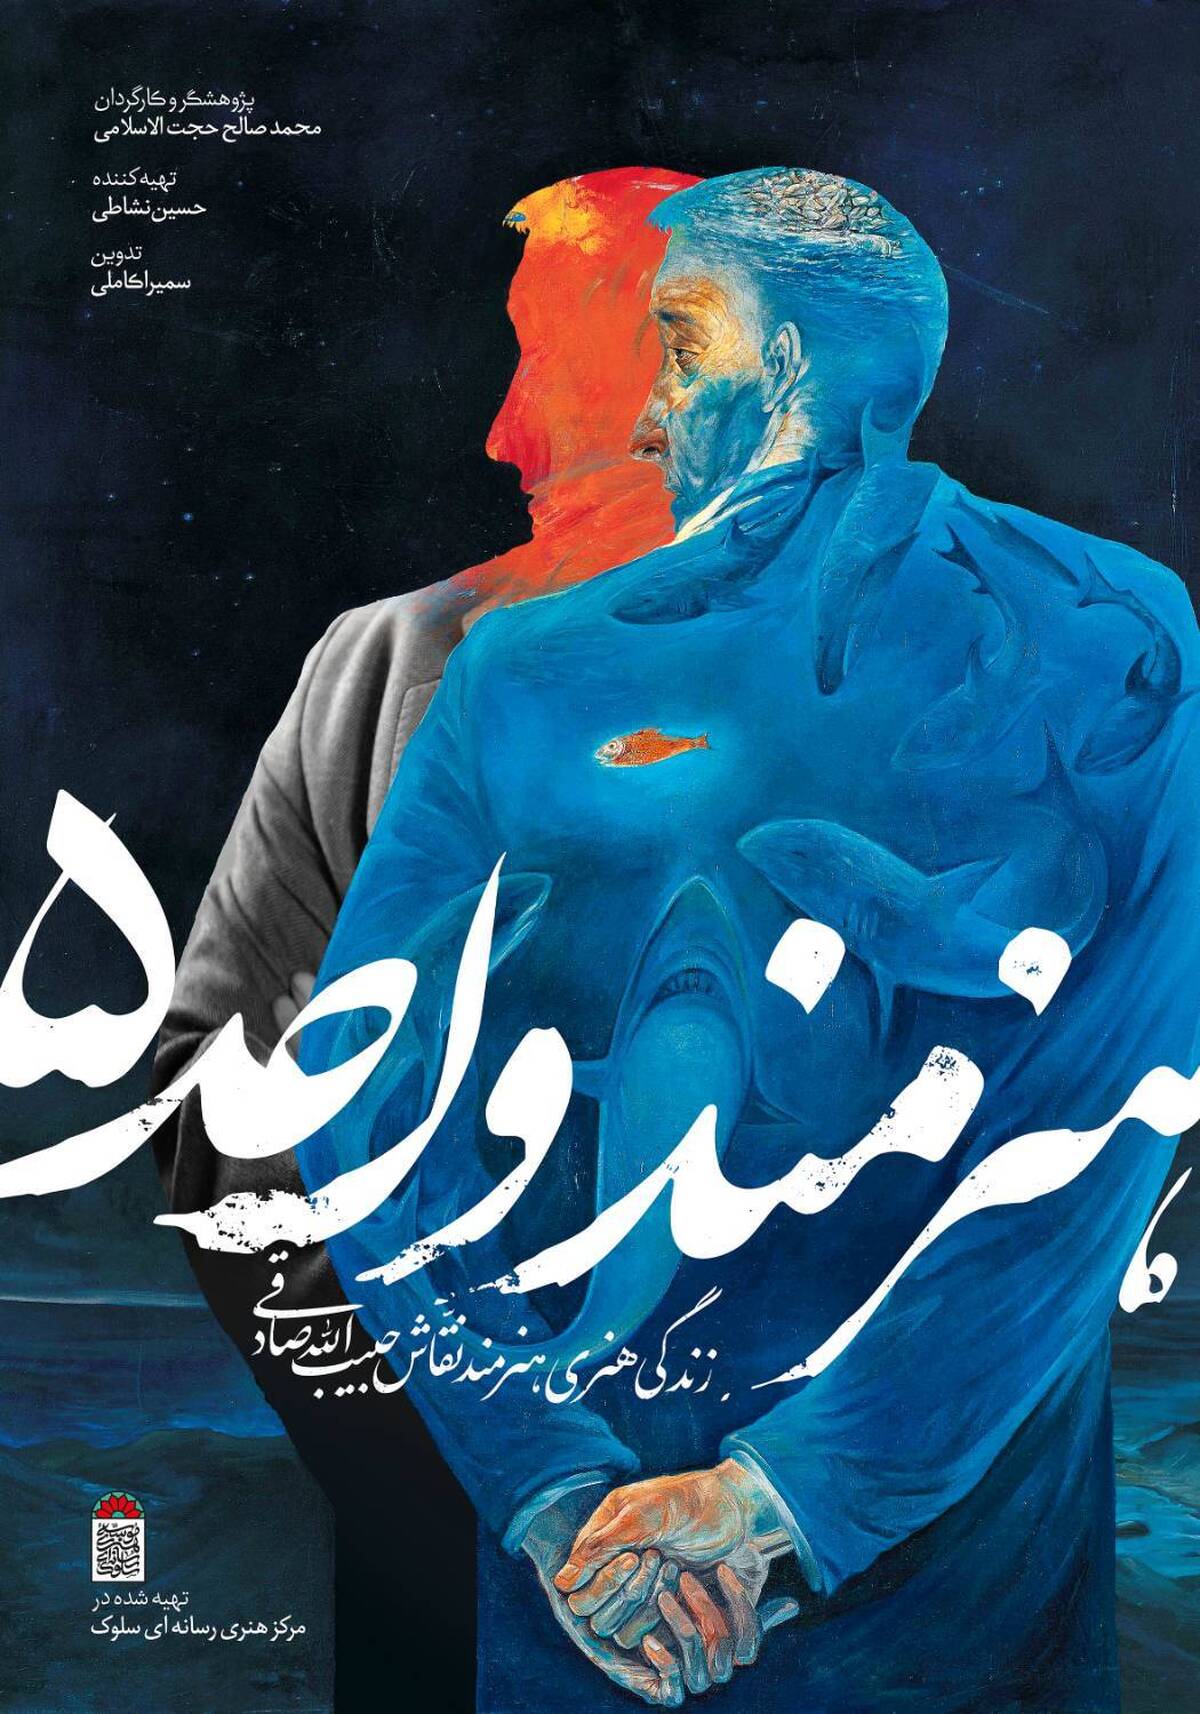 رونمایی و انتشار پوستر و لوگو مستند «هنرمند واحد ۵»